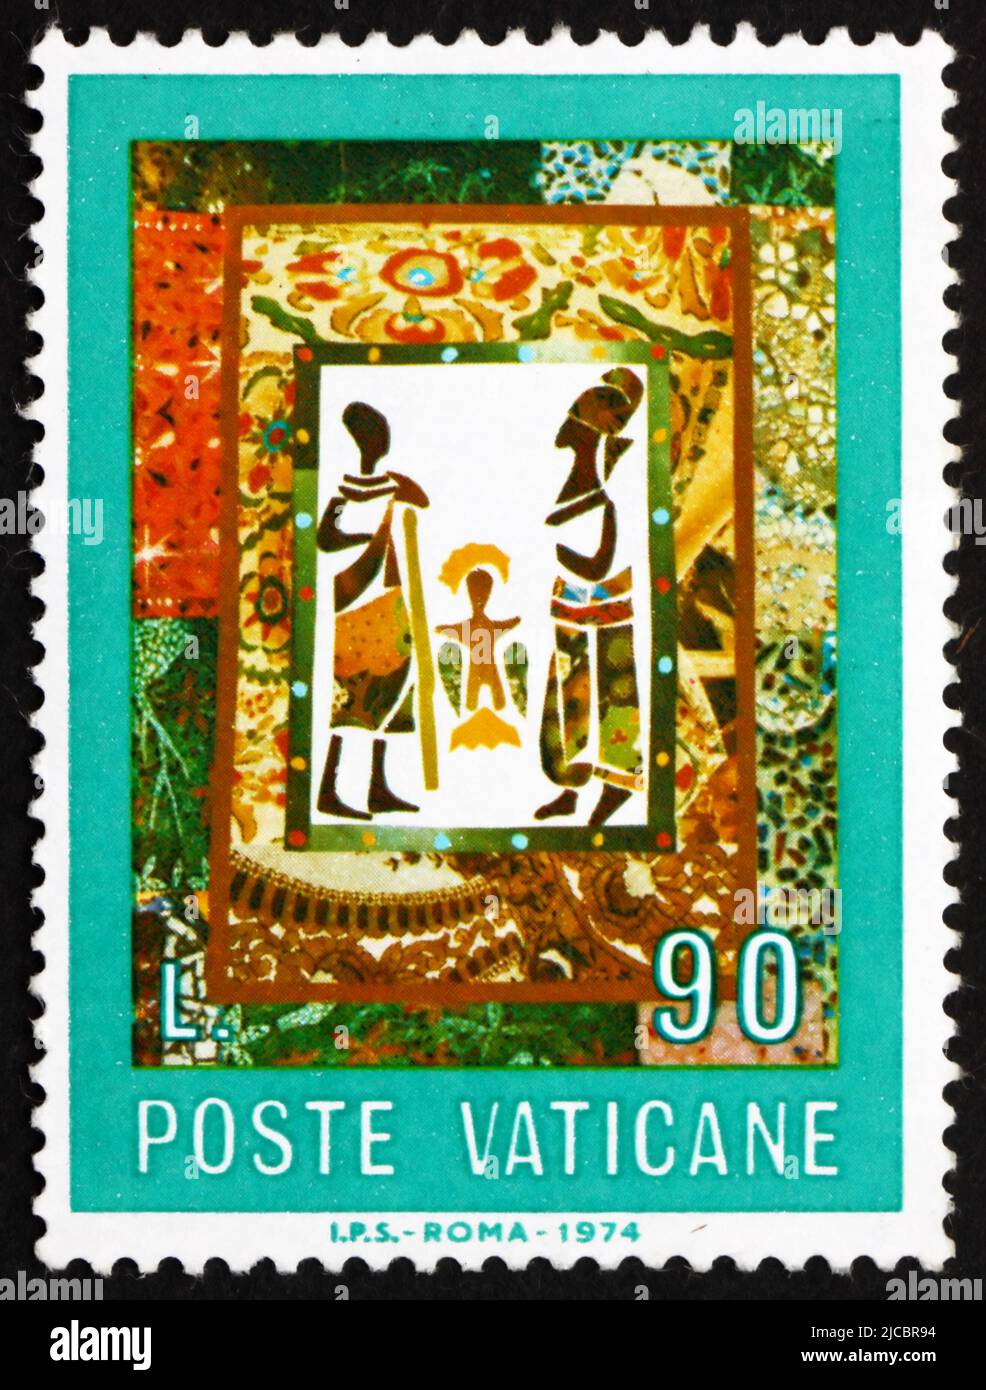 VATIKAN - CA. 1974: Ein im Vatikan gedruckter Stempel zeigt die Geburt, Afrikanisch, ca. 1974 Stockfoto